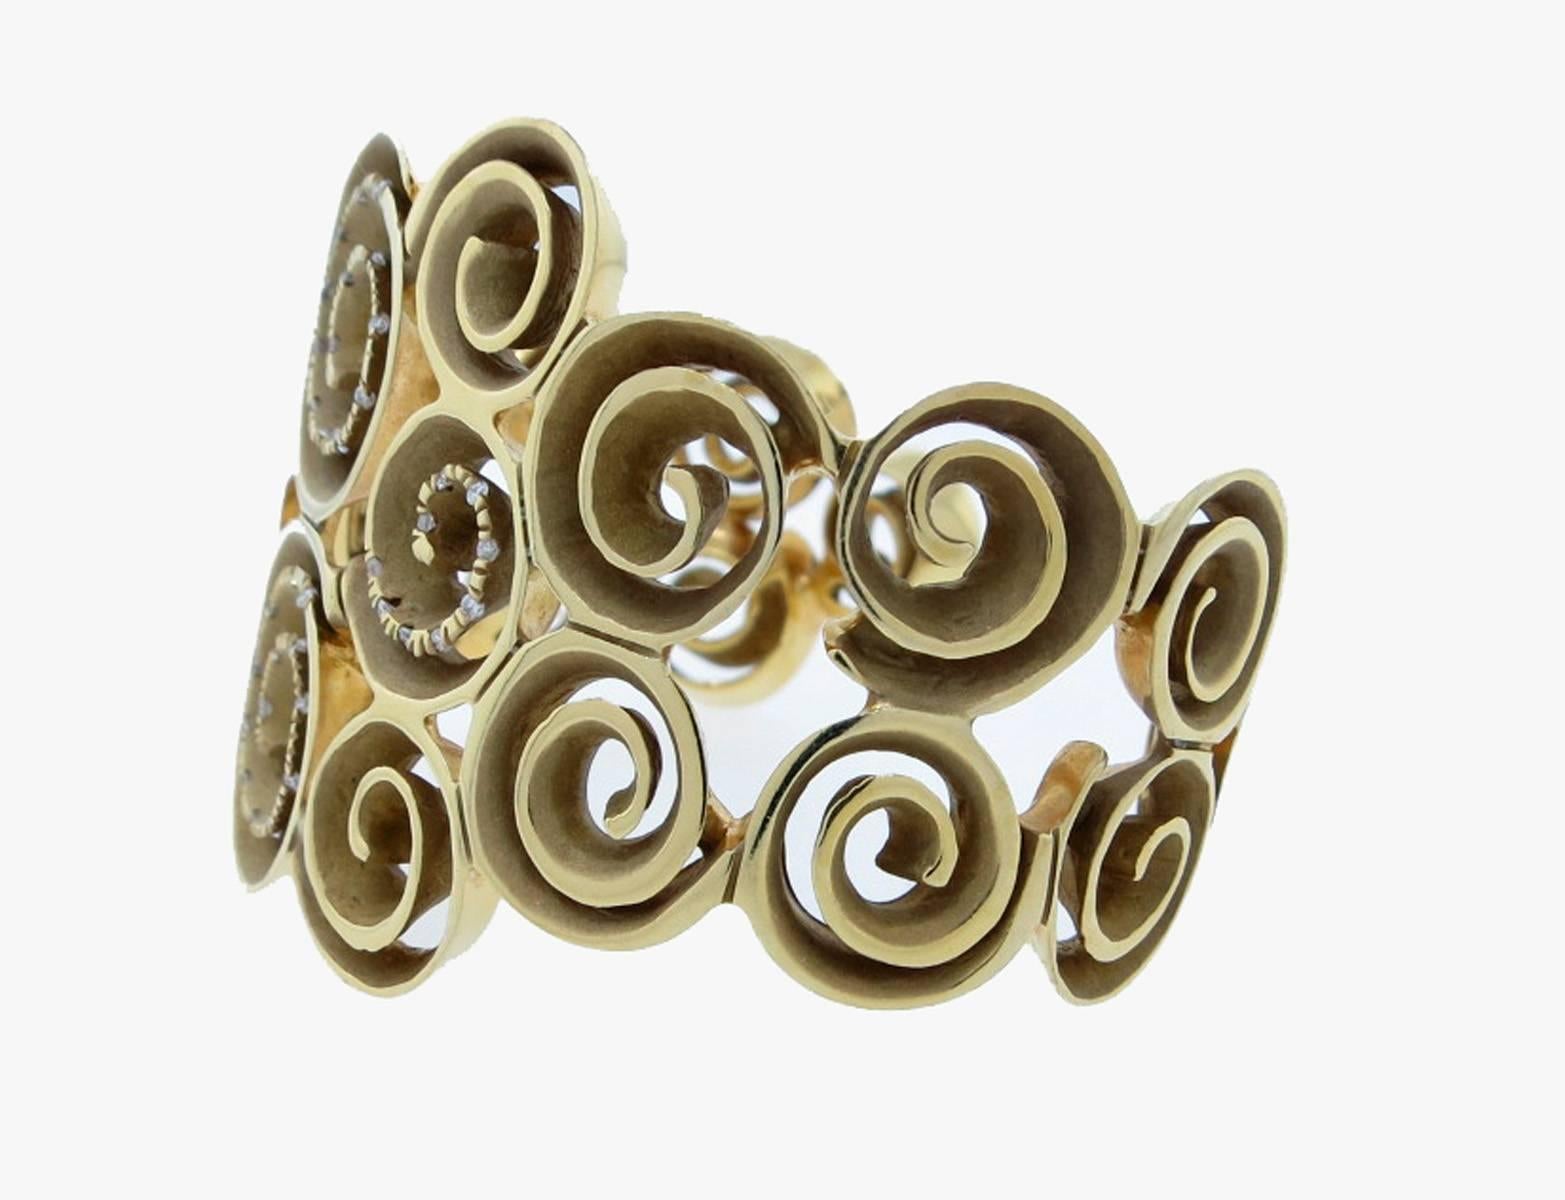 Modernist style cuff bracelet by